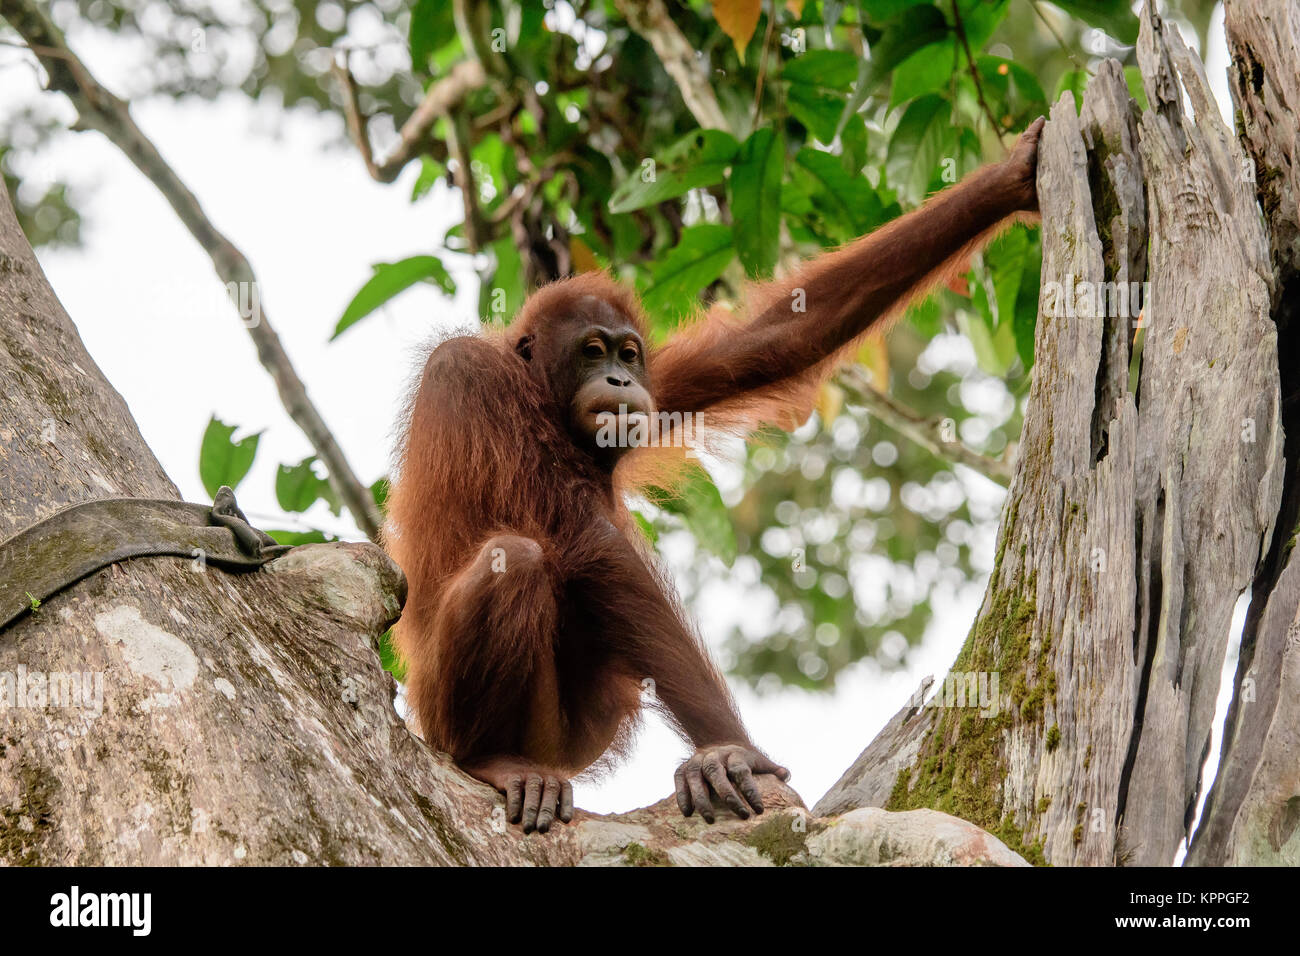 Orangután observando desde su percha en un árbol Foto de stock